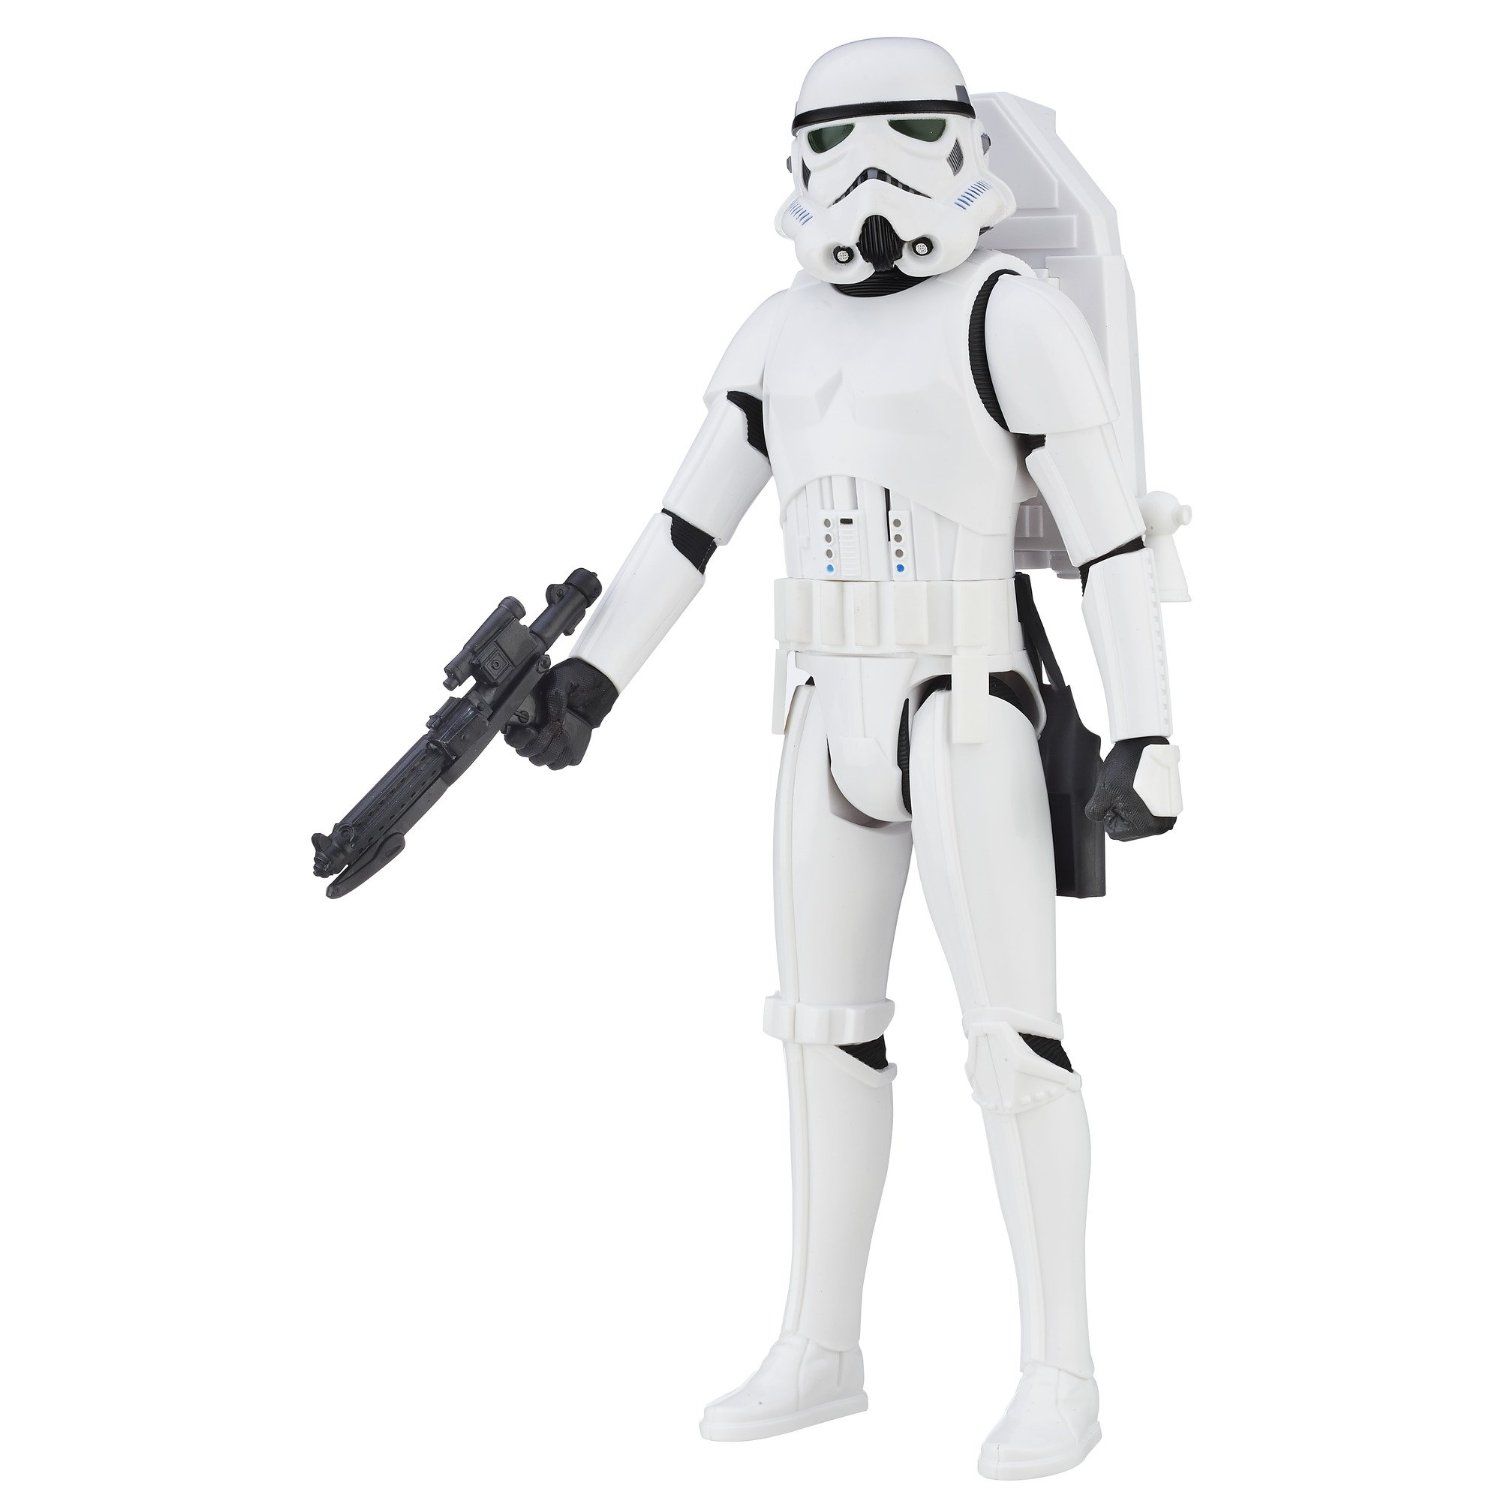 Soldes jouet Star Wars - Rogue One - Figurine Interactive Stormtrooper, Jouet pas cher Amazon